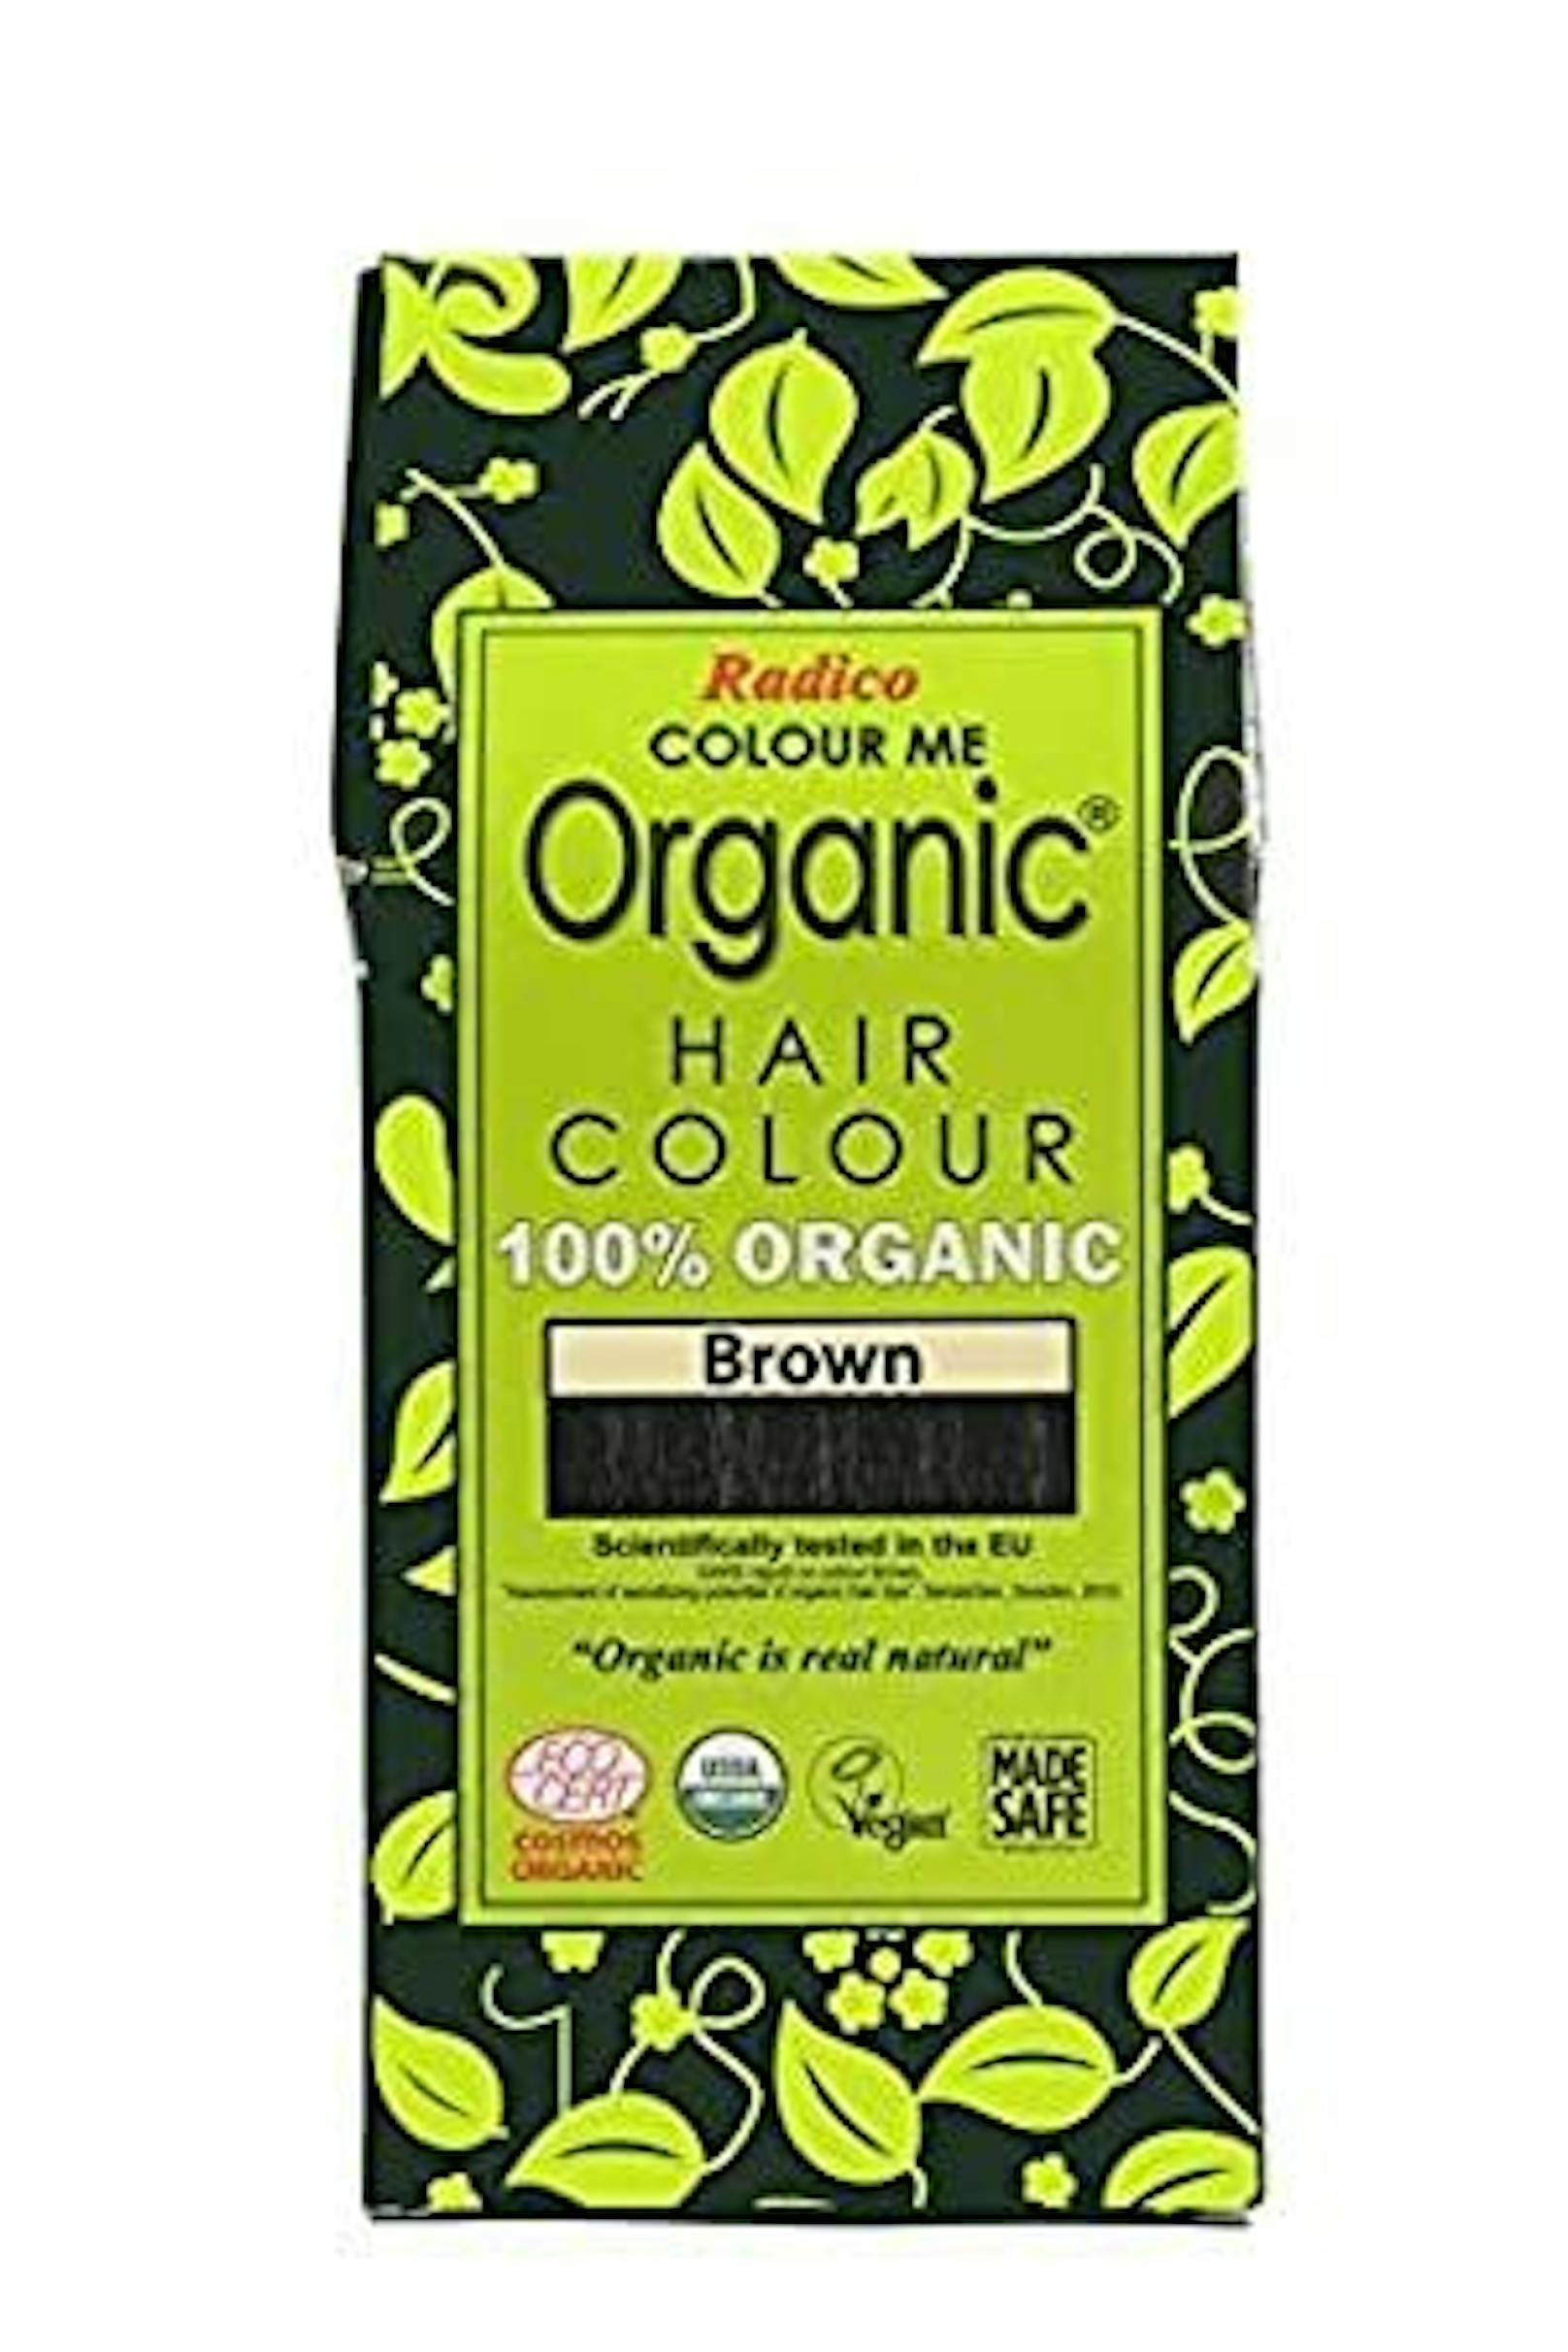 Radico Colour Me Organic Premium Hair Colour Braun